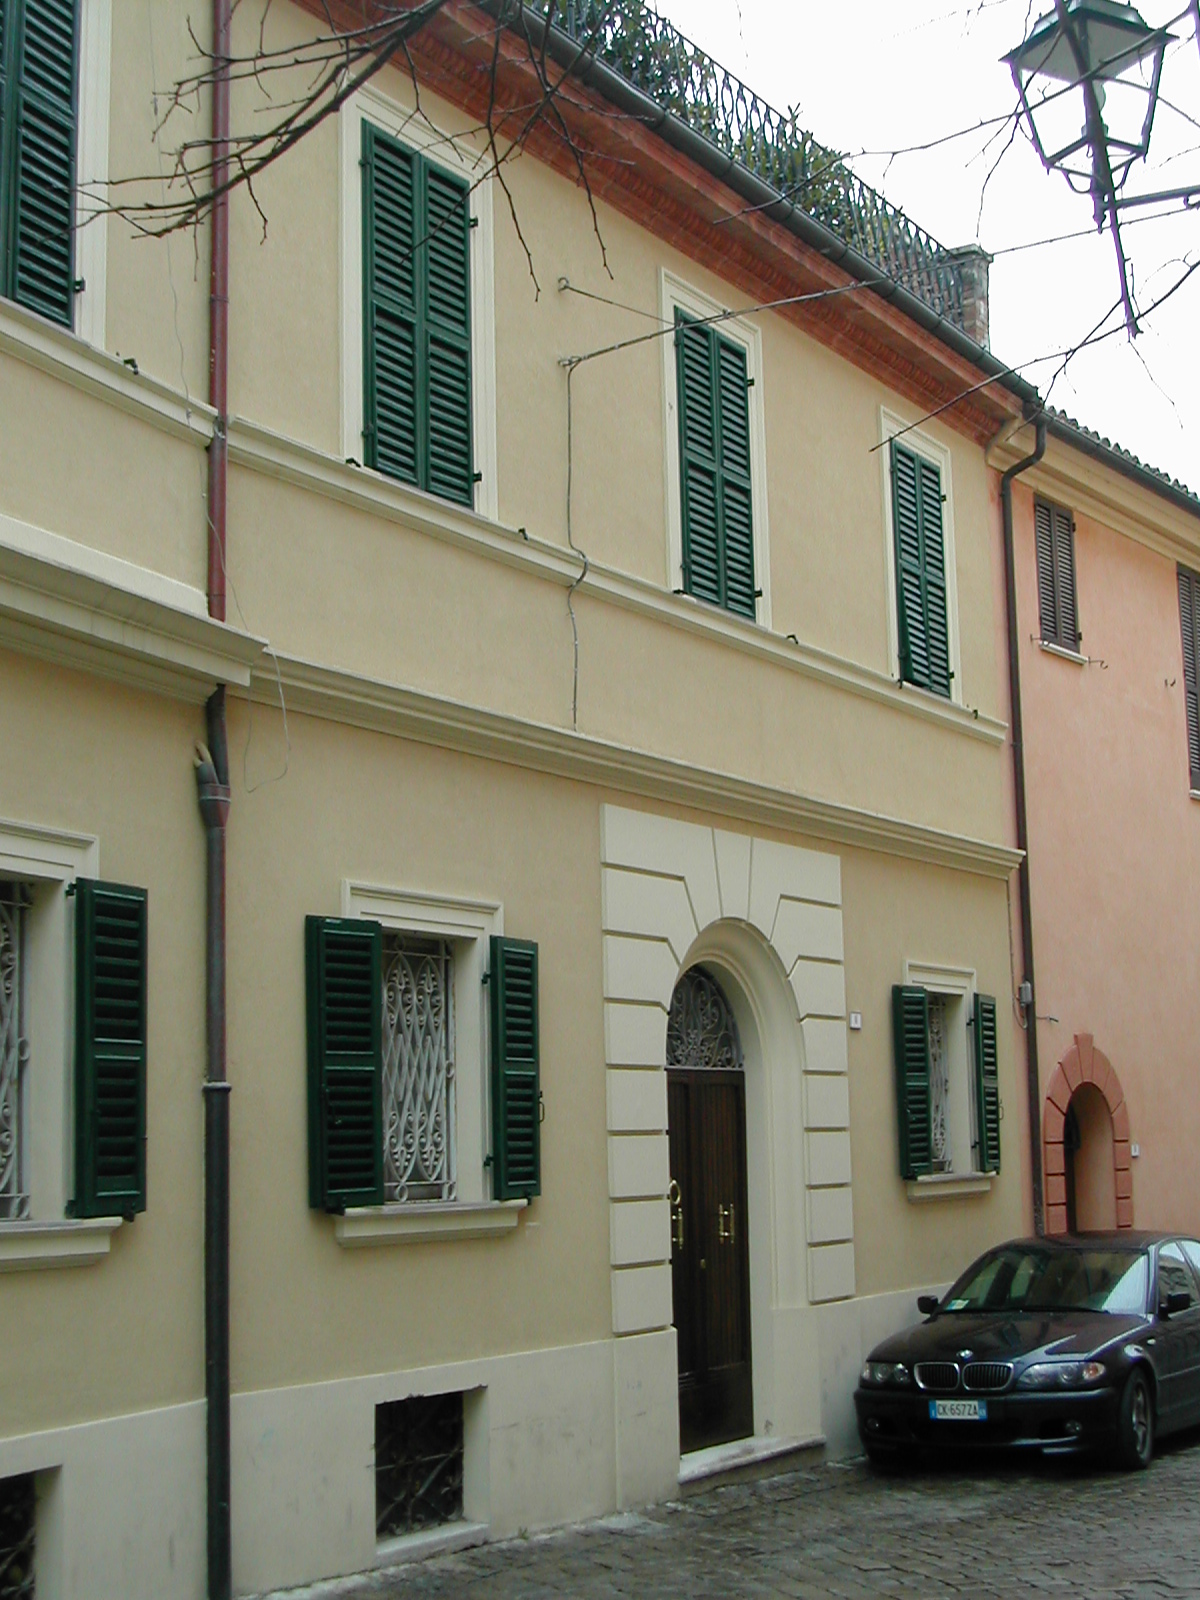 Palazzo in Via Garibaldi, 8 (palazzo, signorile) - Serra San Quirico (AN) 